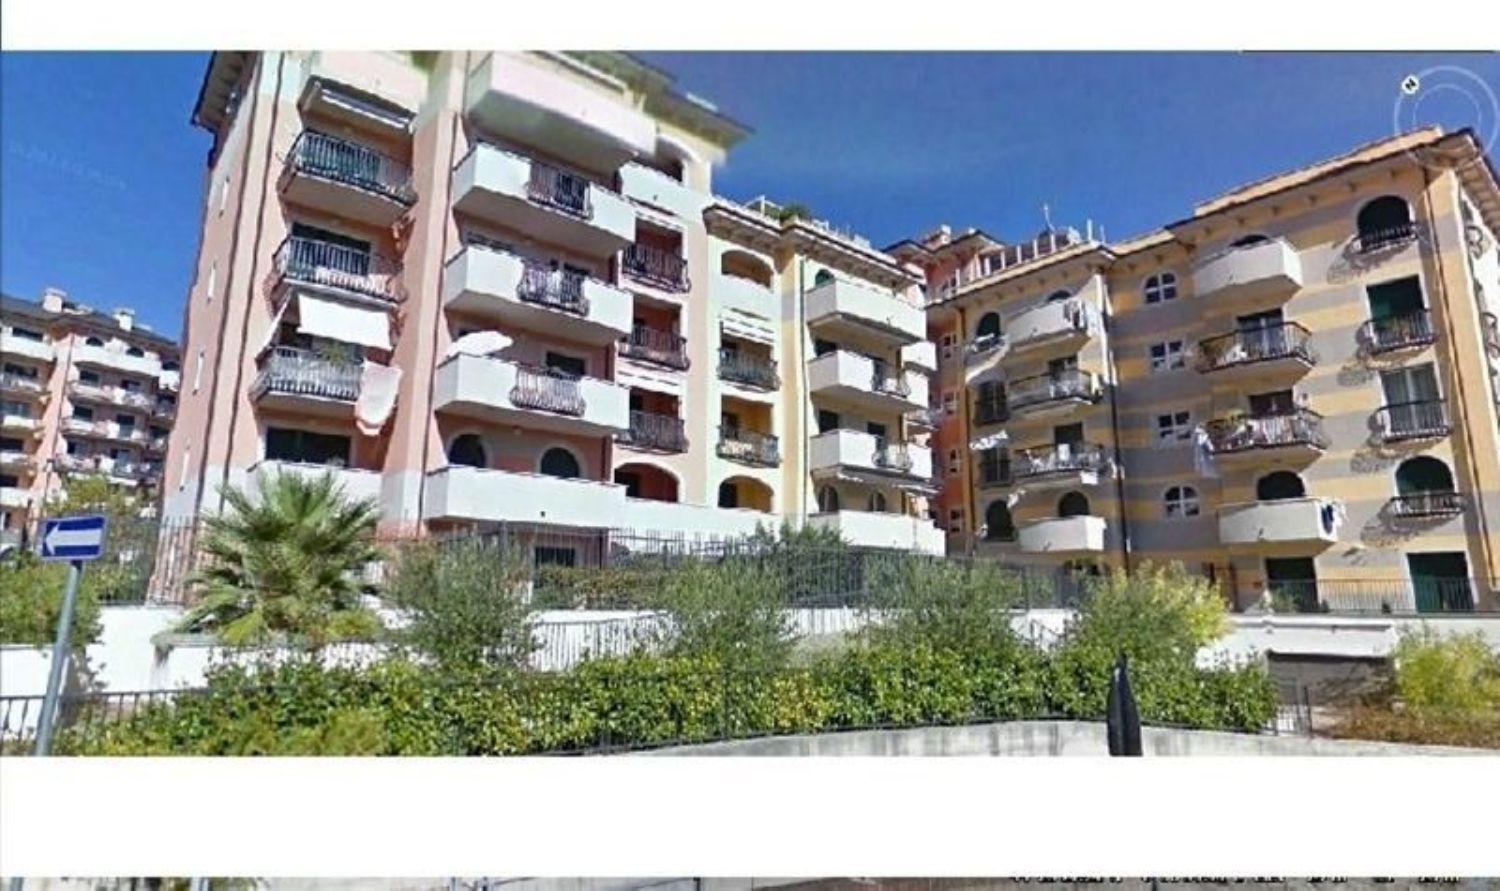 Attico / Mansarda in vendita a Cogoleto, 4 locali, prezzo € 790.000 | PortaleAgenzieImmobiliari.it